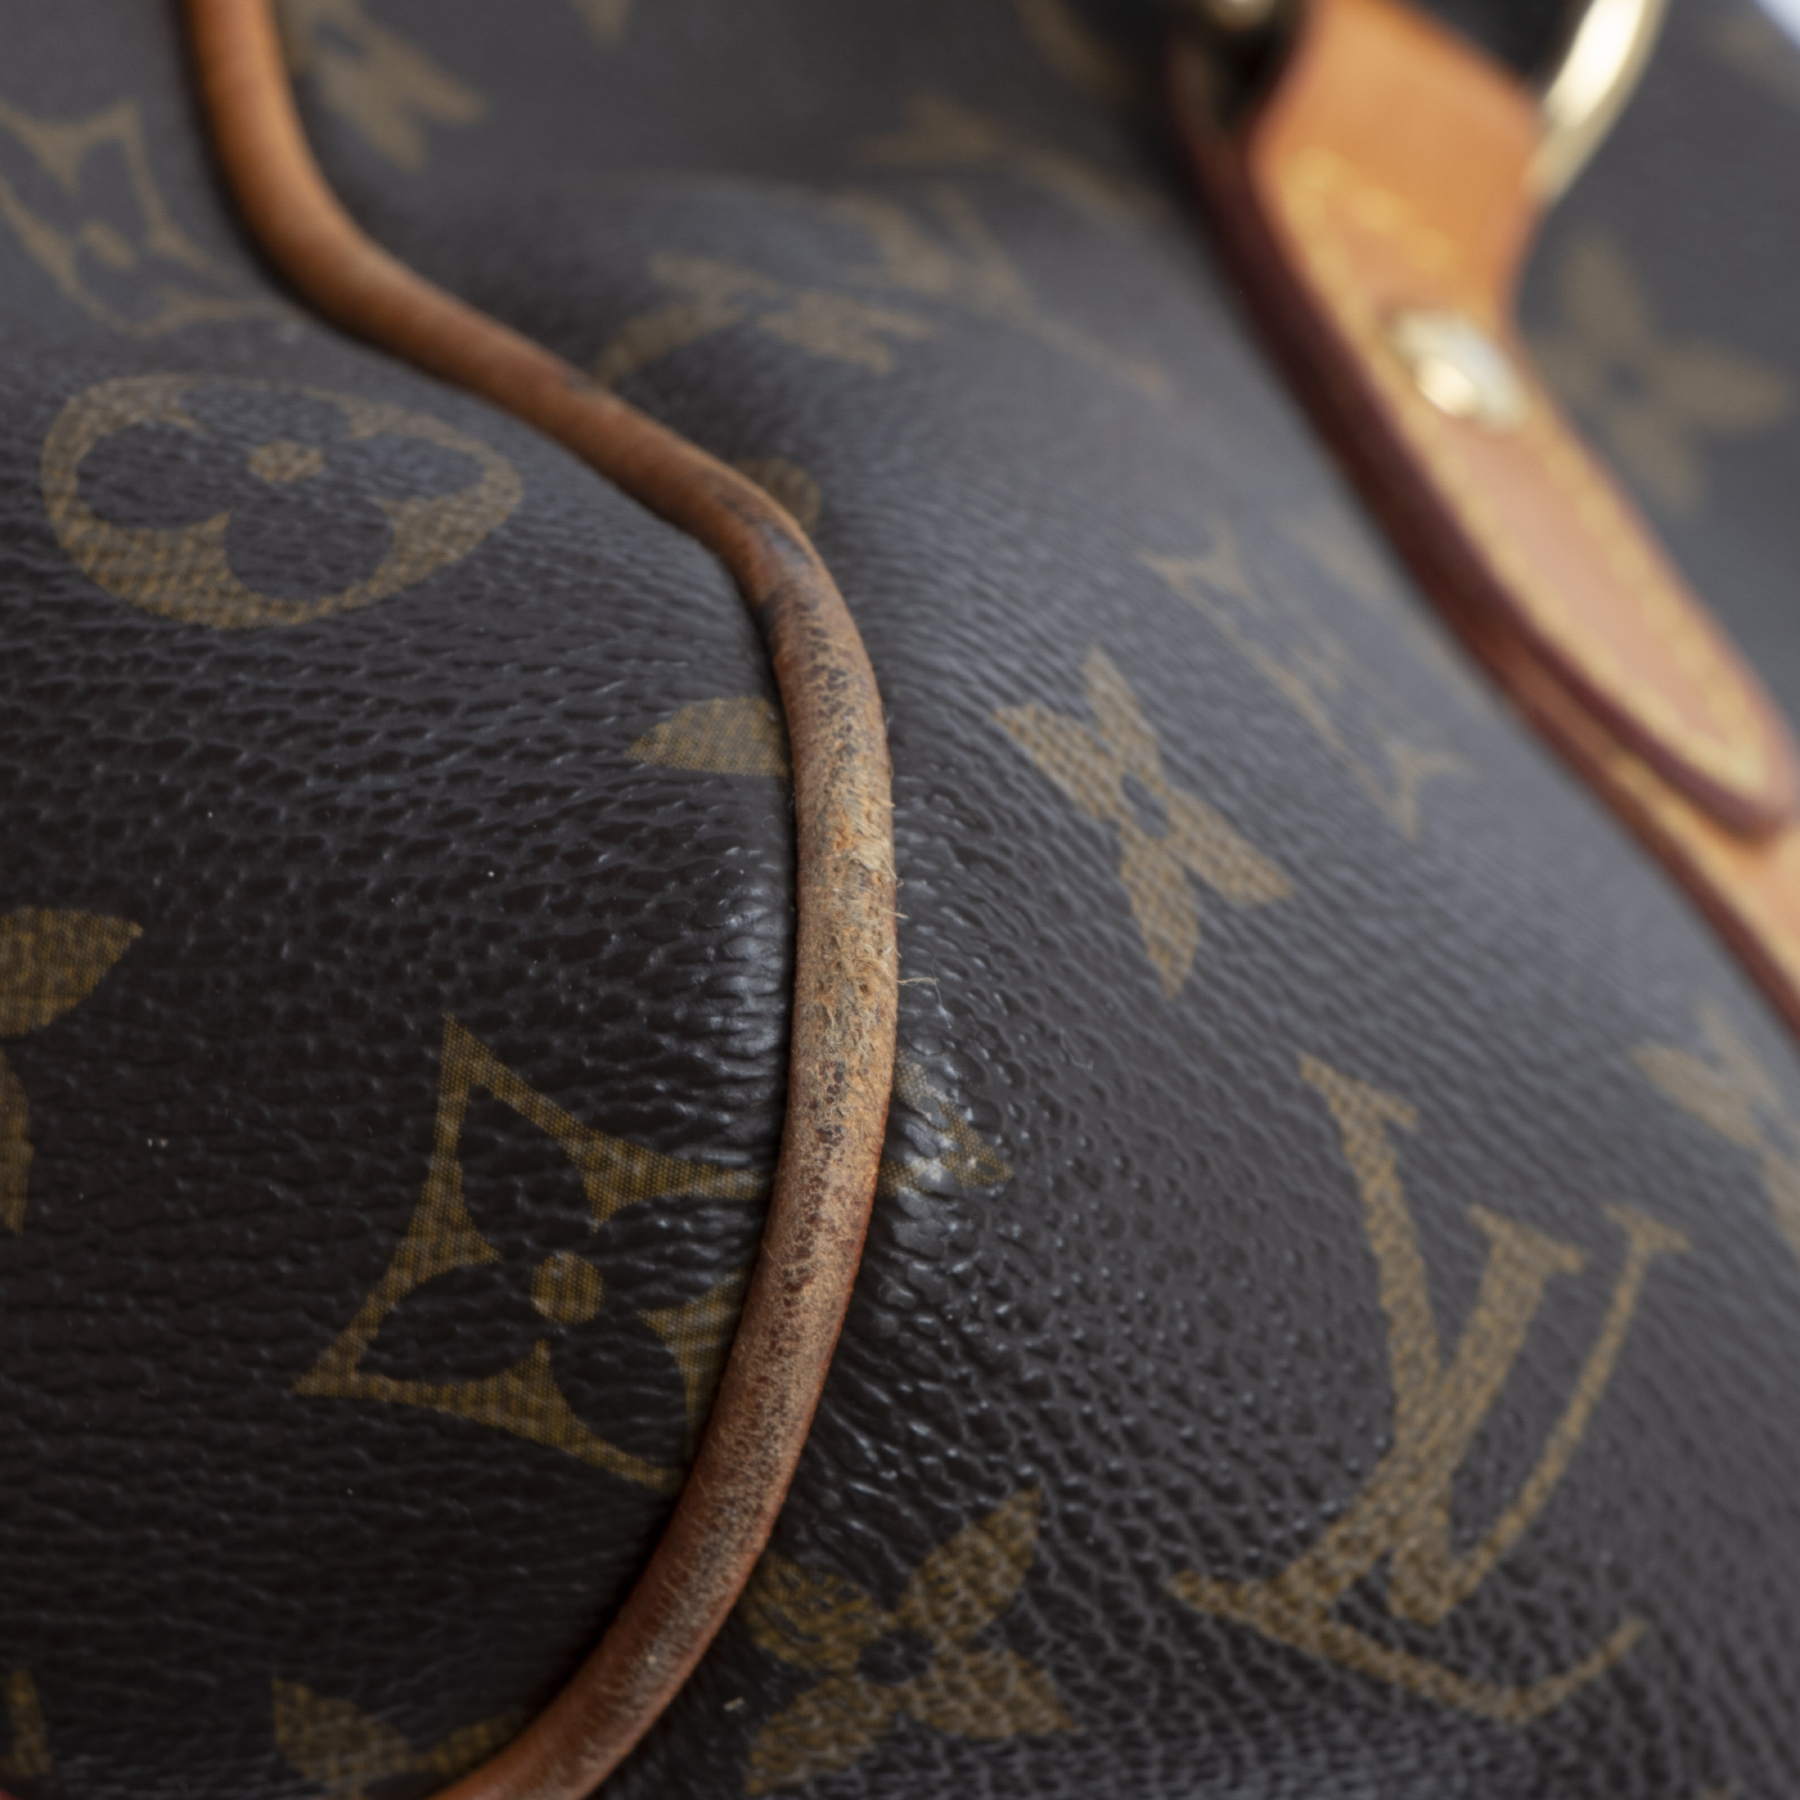 Louis Vuitton Monogram Stresa GM Bowler Shoulder Bag 71lz66s